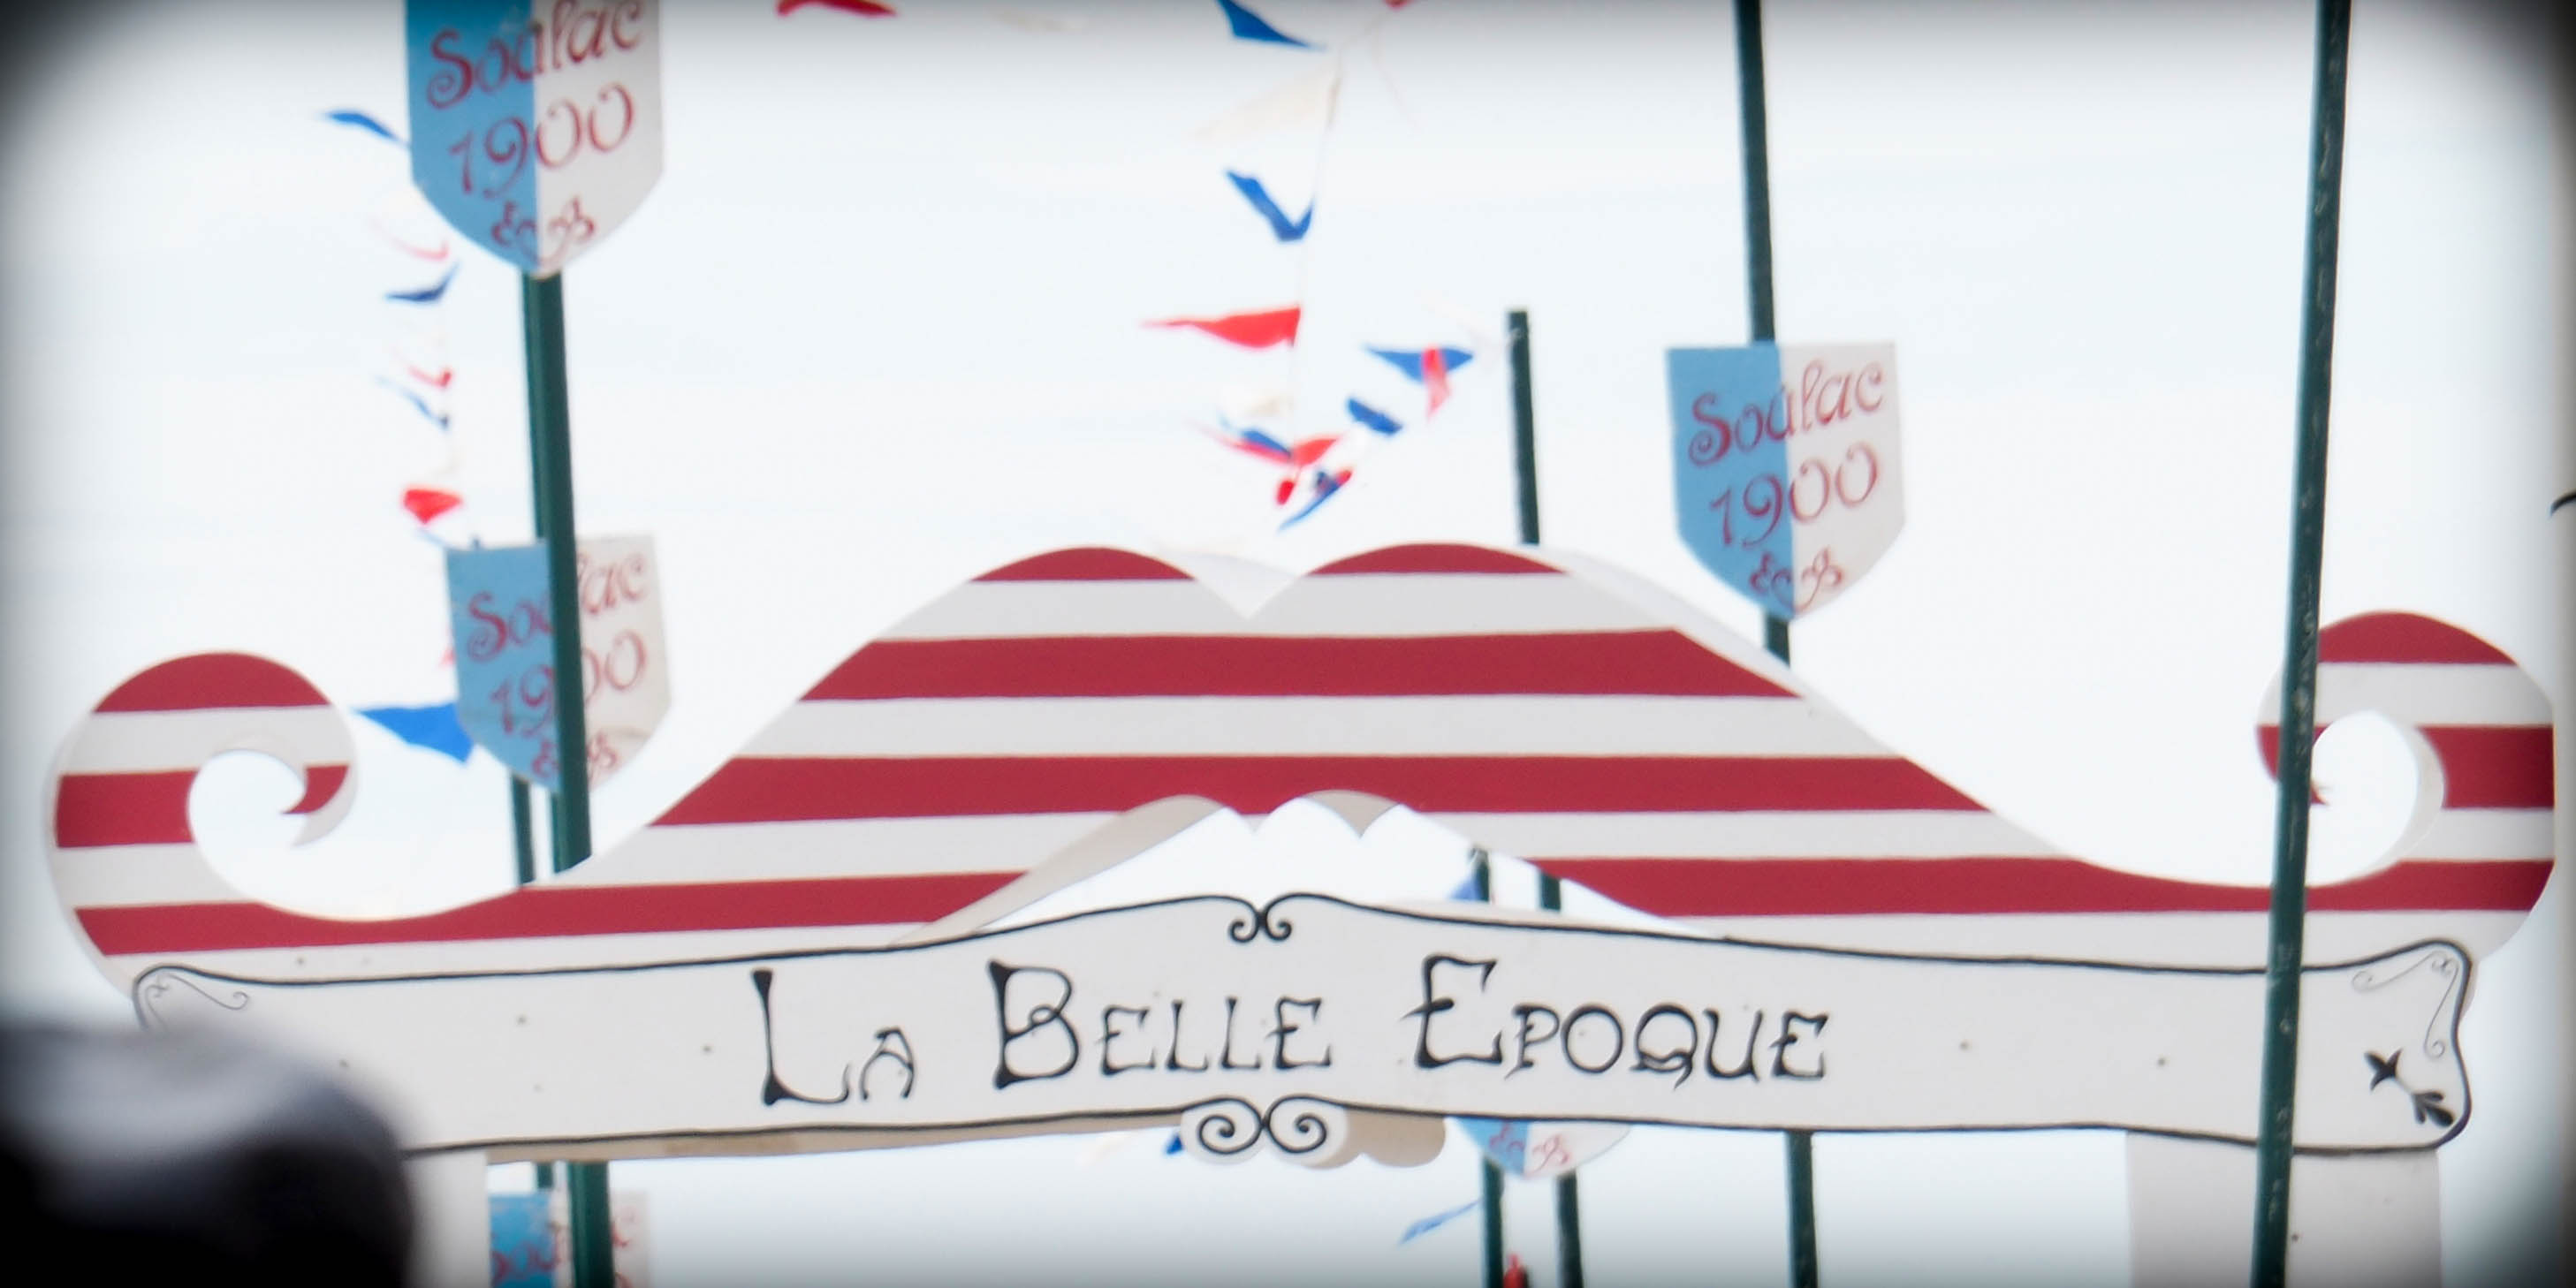 Soulac 1900 - La Belle Epoque - Moustache